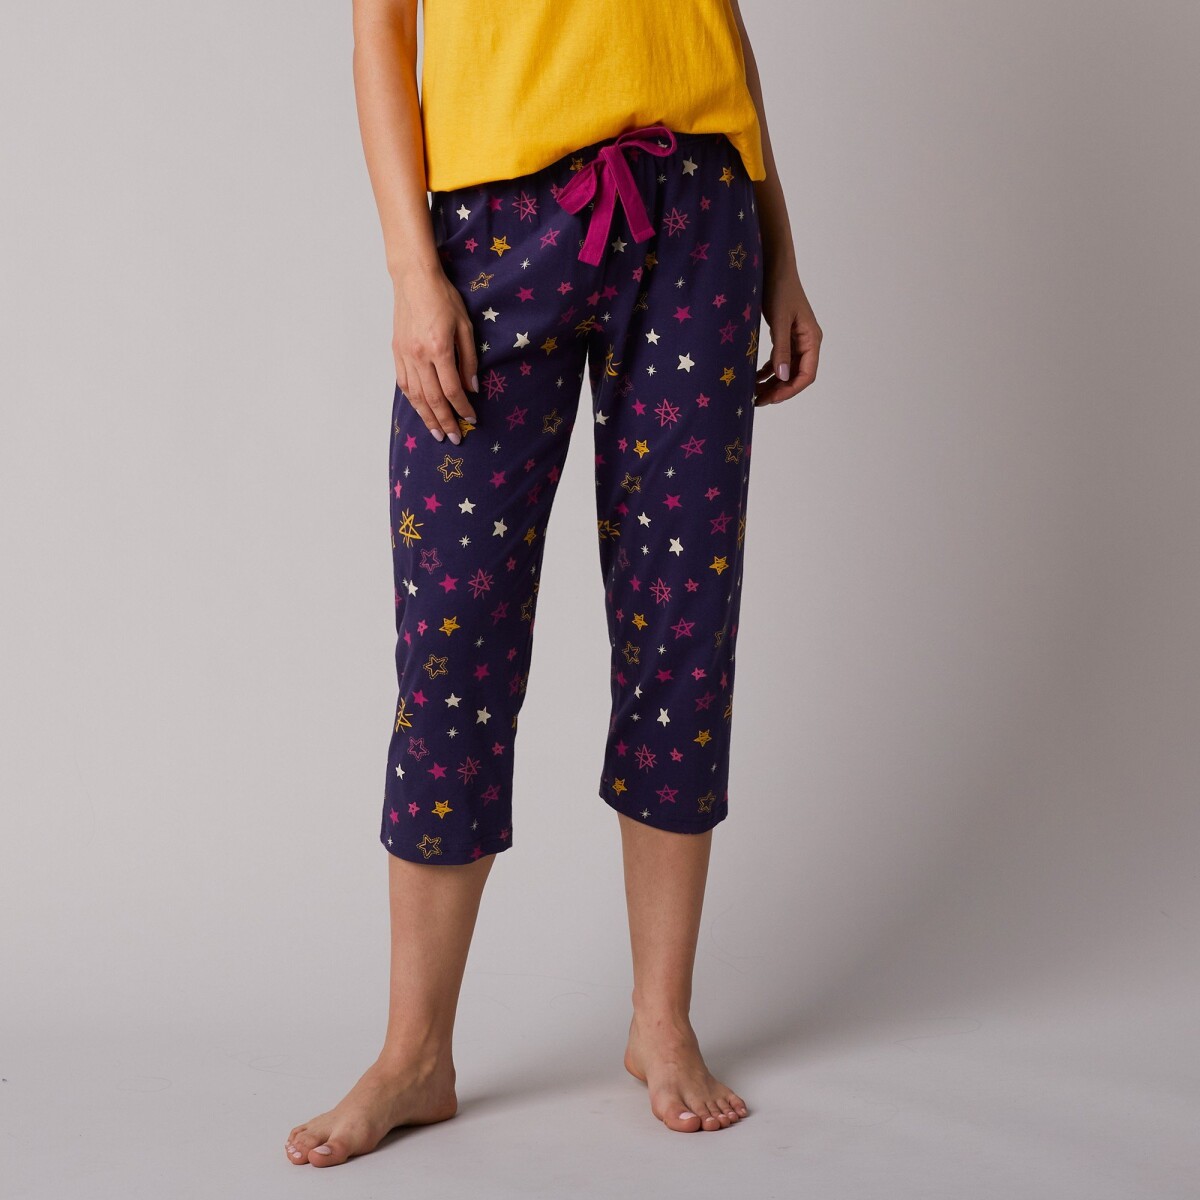 Levně 3/4 pyžamové kalhoty Estrella s potiskem hvězdiček